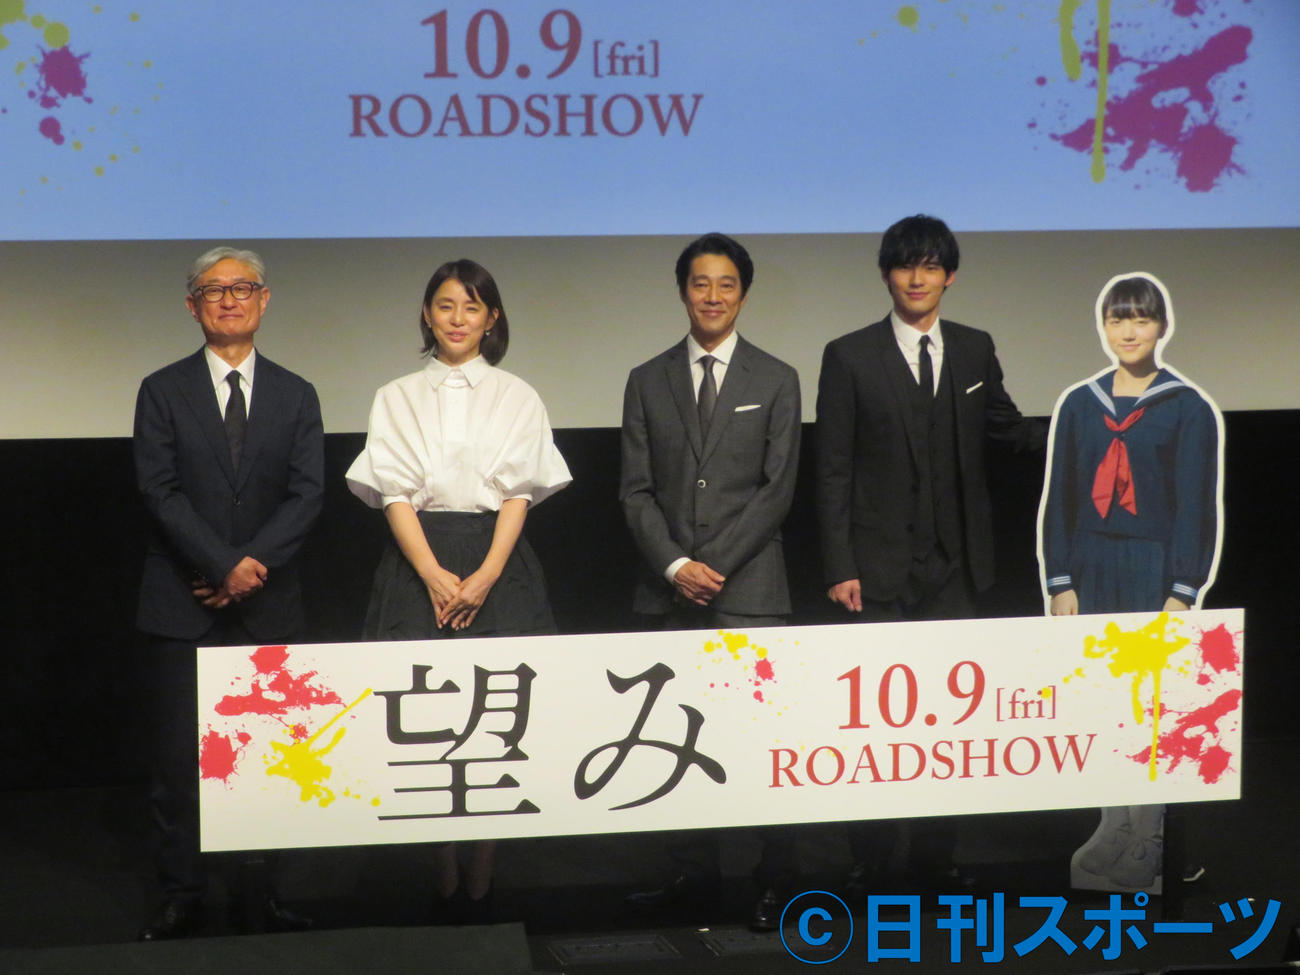 映画「望み」完成披露舞台あいさつに出席した、左から堤幸彦監督、石田ゆり子、堤真一、岡田健史